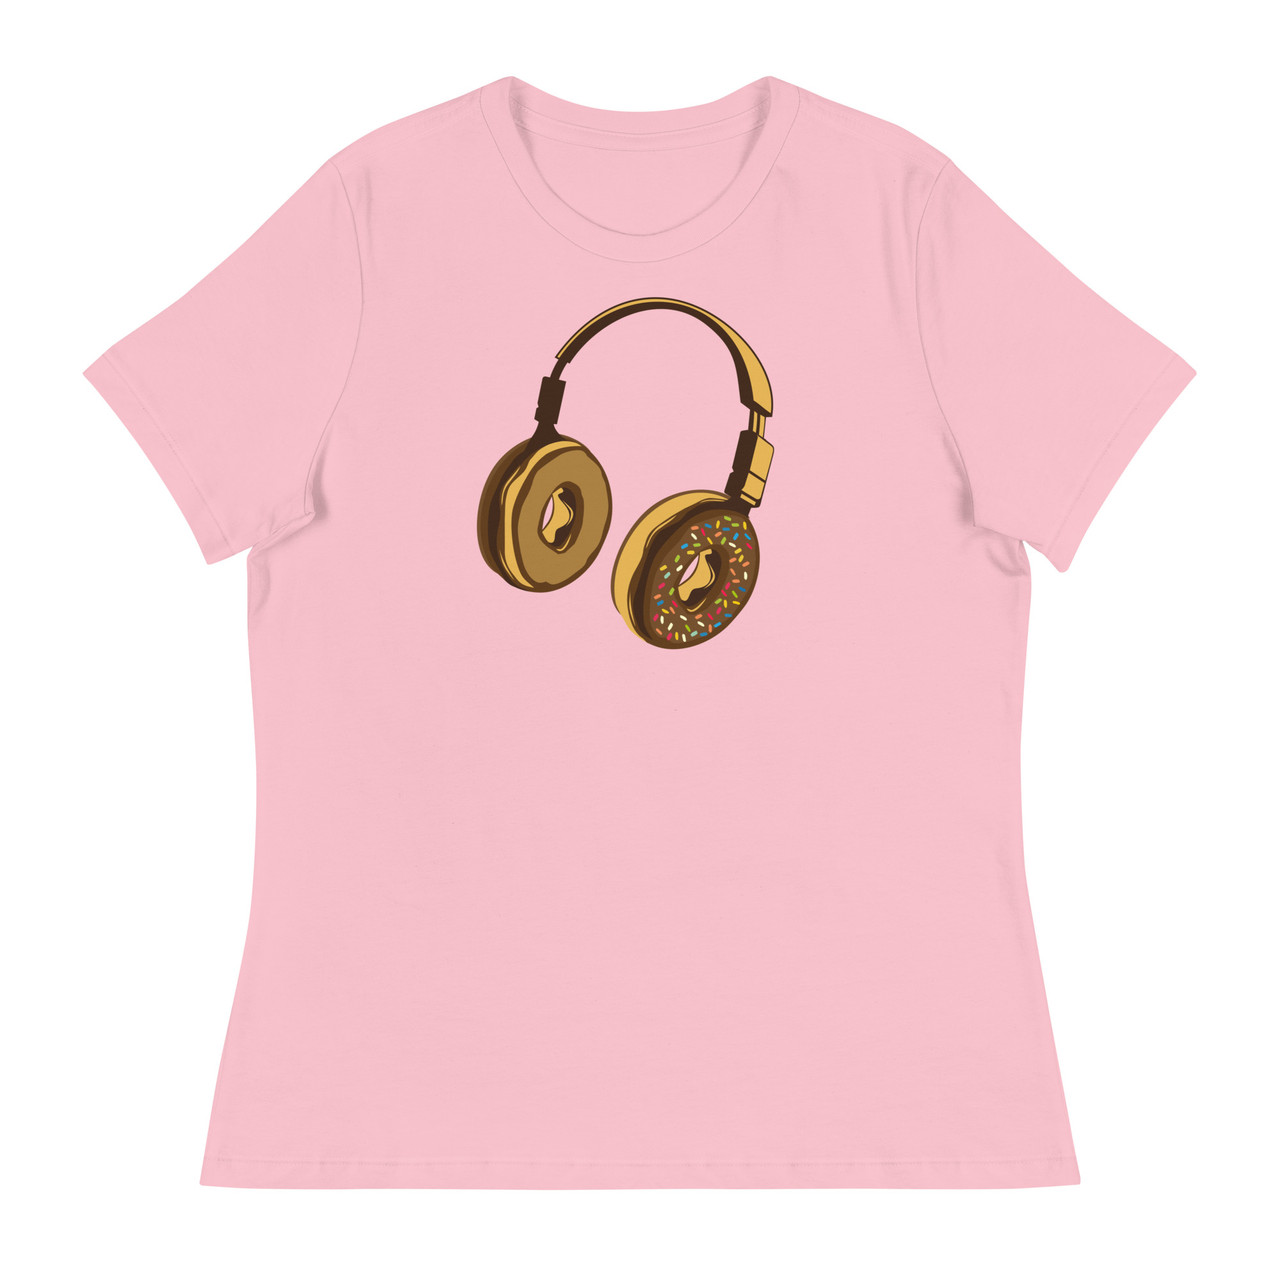 Headphone Donut Women's Relaxed T-Shirt - Bella + Canvas 6400 